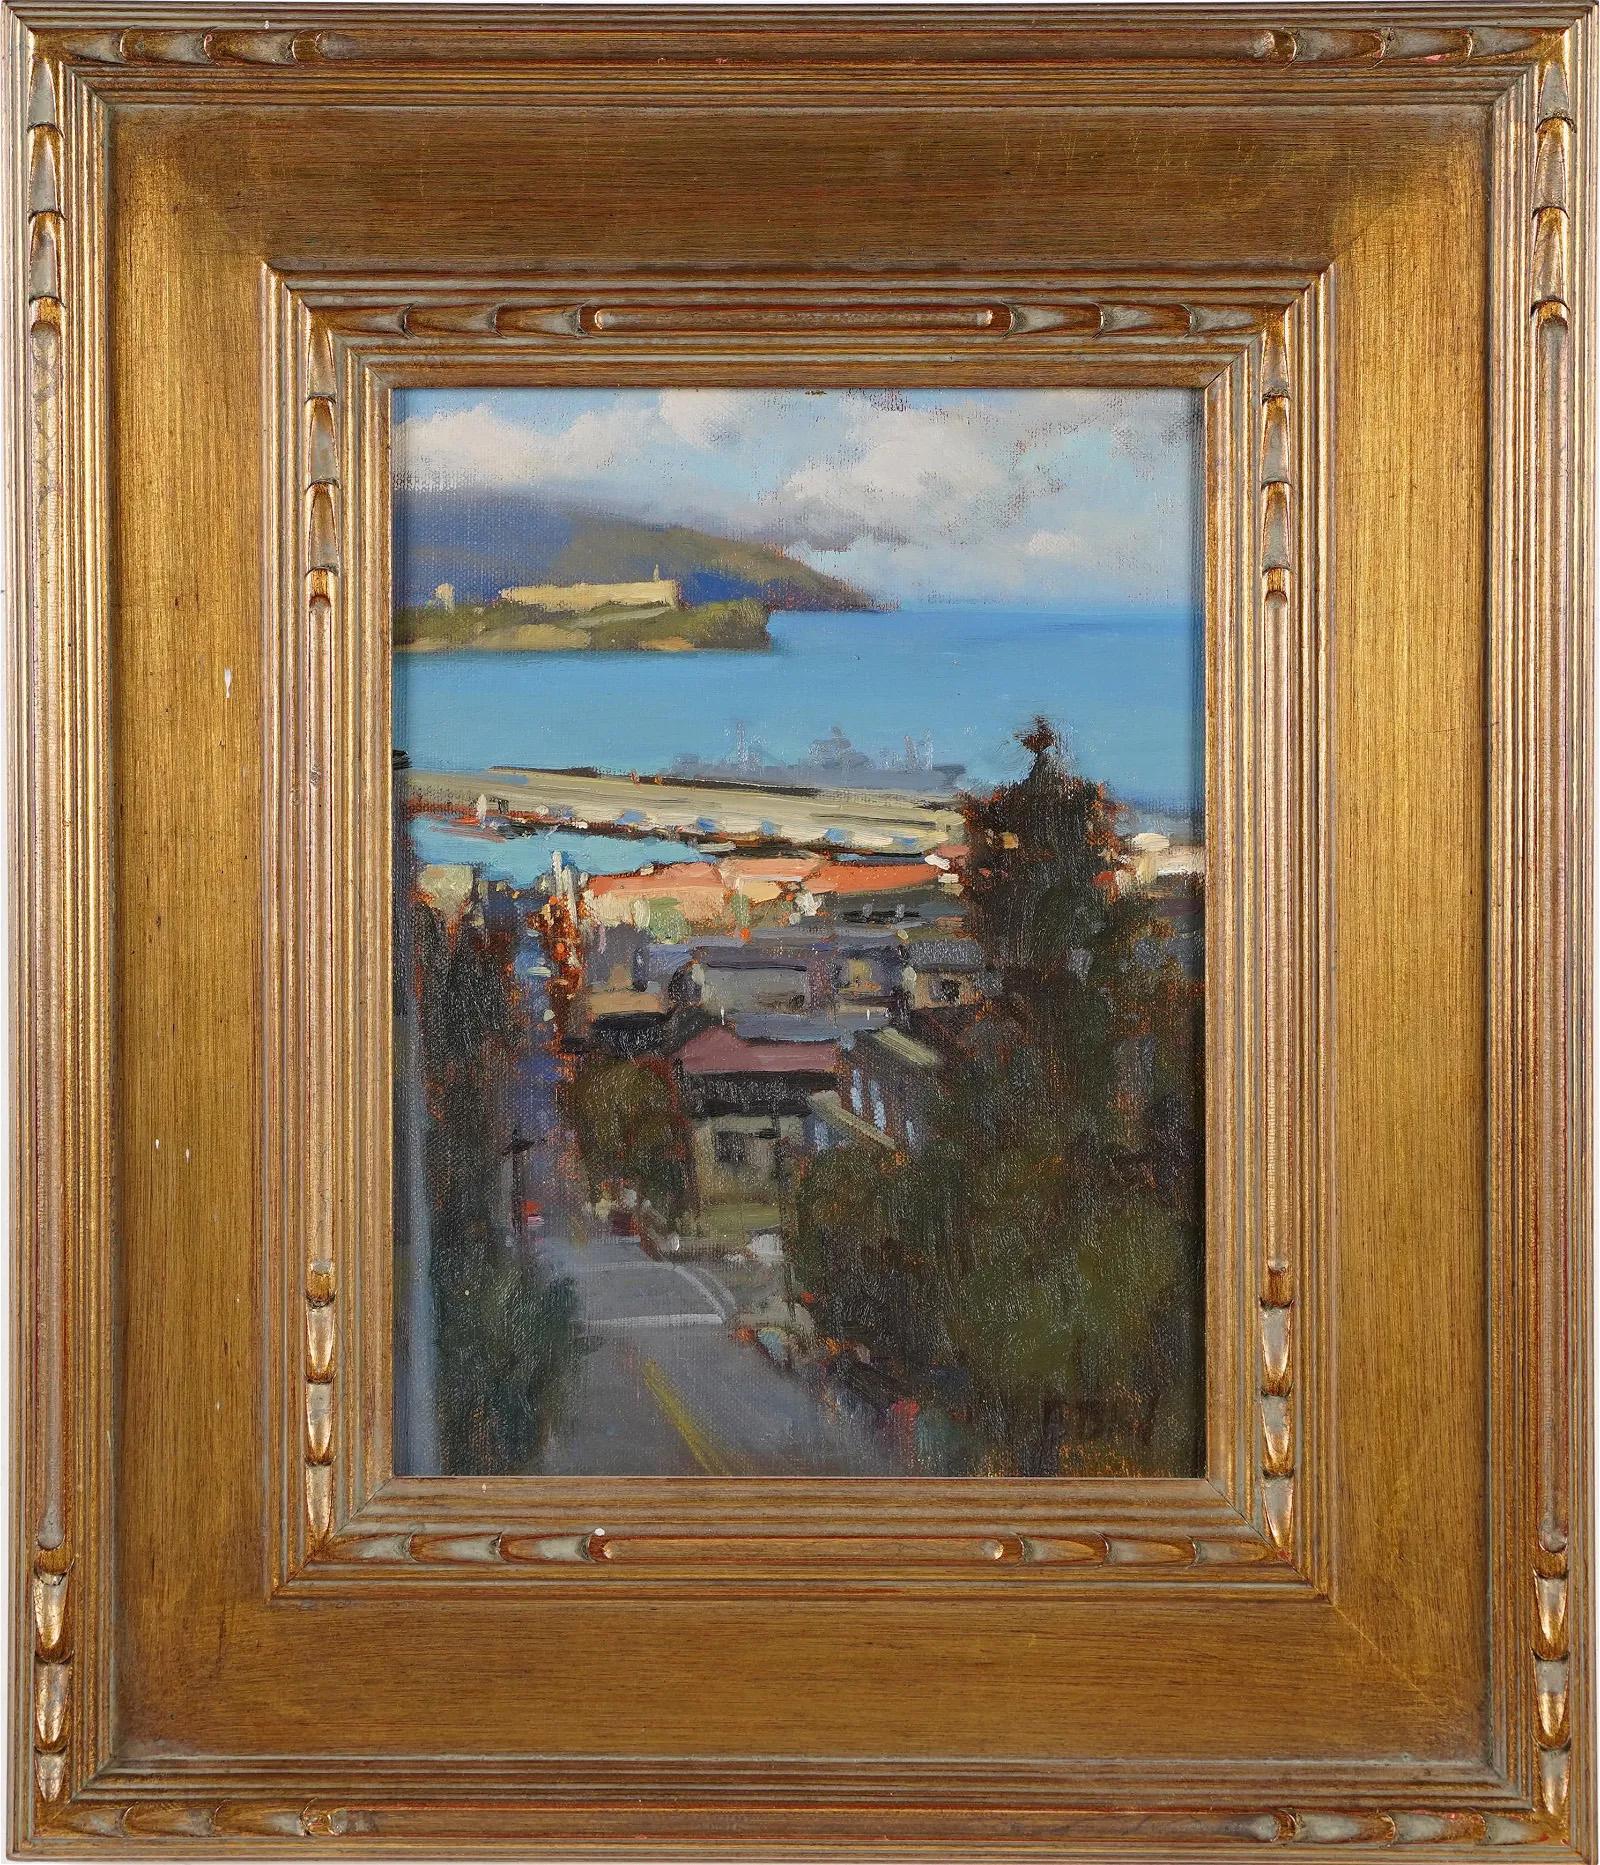 Vintage American School Impressionistisches Vintage-Ölgemälde, San Francisco, Ansicht einer Landschaft, Ölgemälde – Painting von Brian Blood